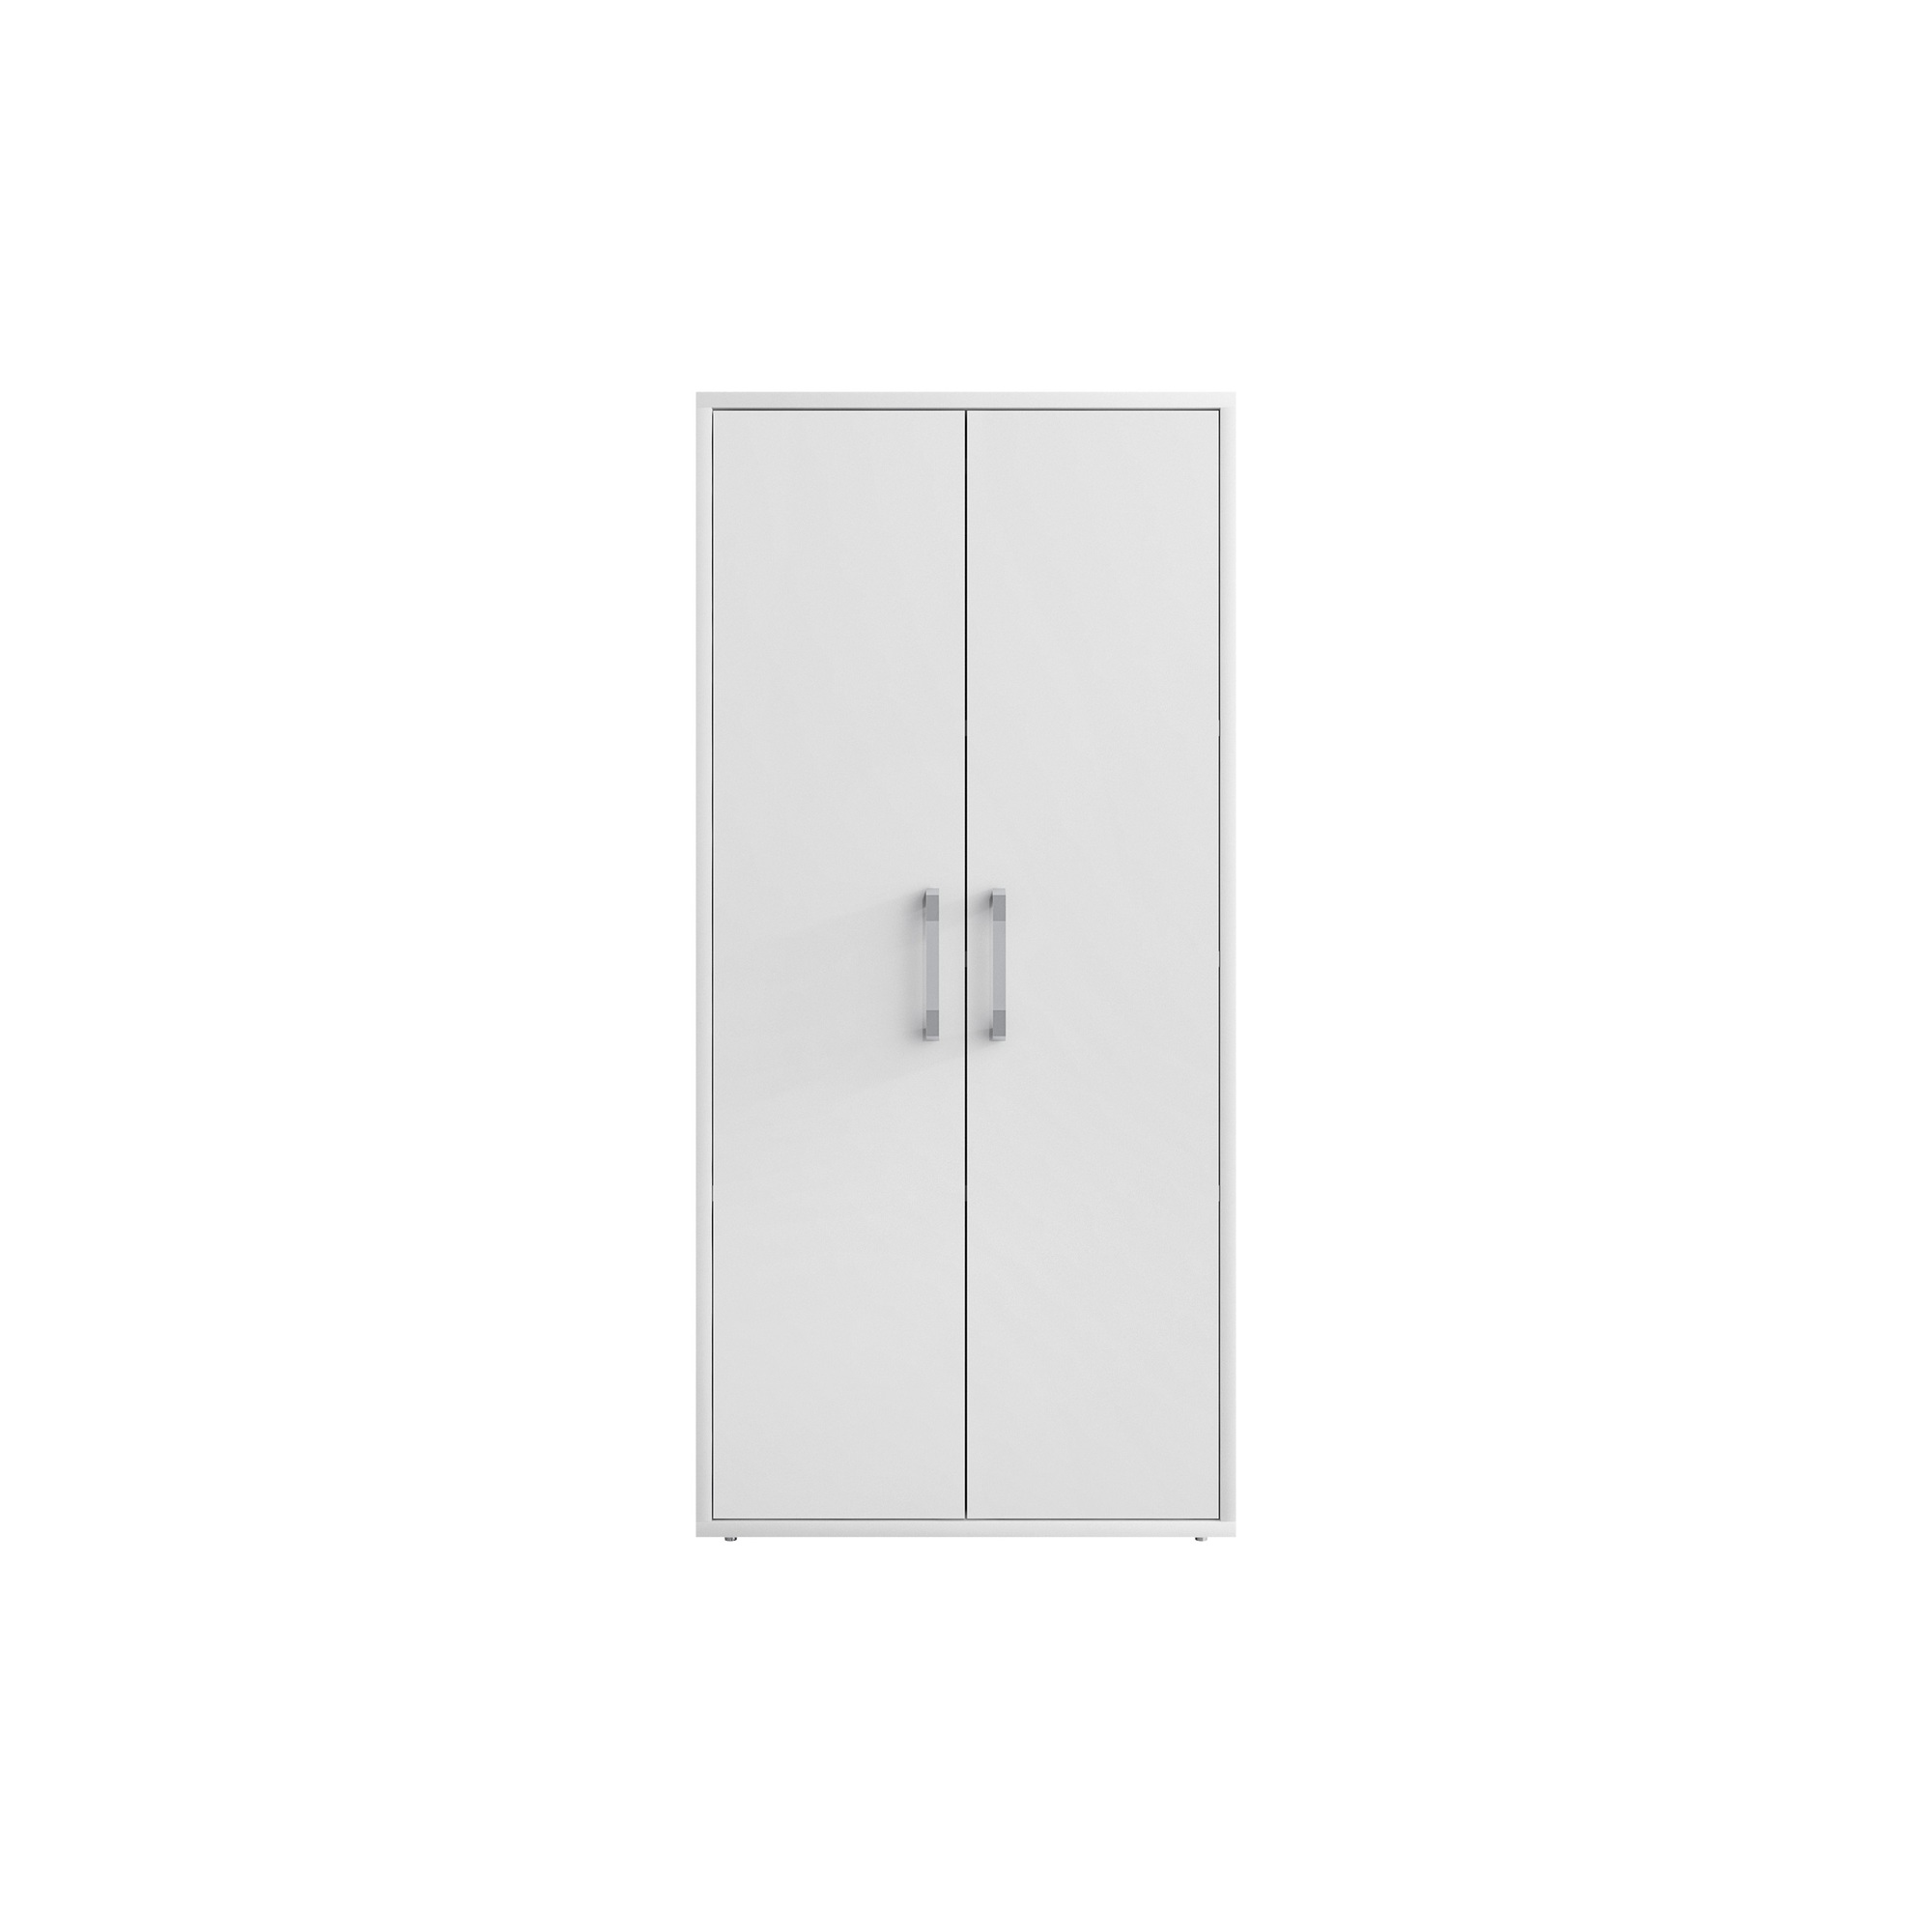 Manhattan Comfort, Eiffel 73.43 Garage Cabinet, White, Height 73.43 in, Width 35.43 in, Color White, Model 250BMC